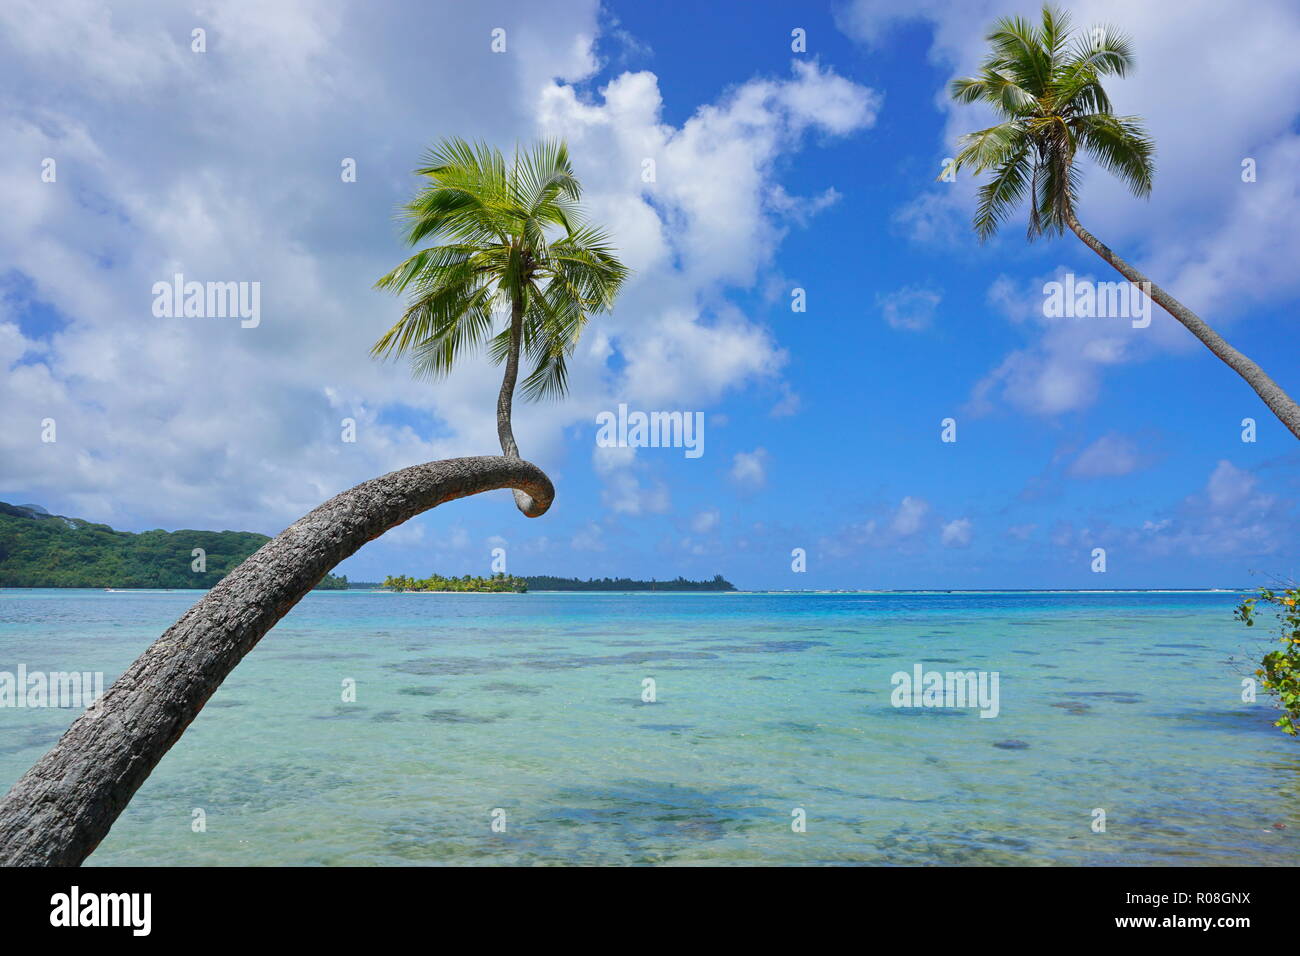 Seascape tropicale due palme di cocco, sporgersi in acqua chiara con nuvoloso cielo blu, Polinesia francese, Huahine, oceano pacifico del sud Foto Stock